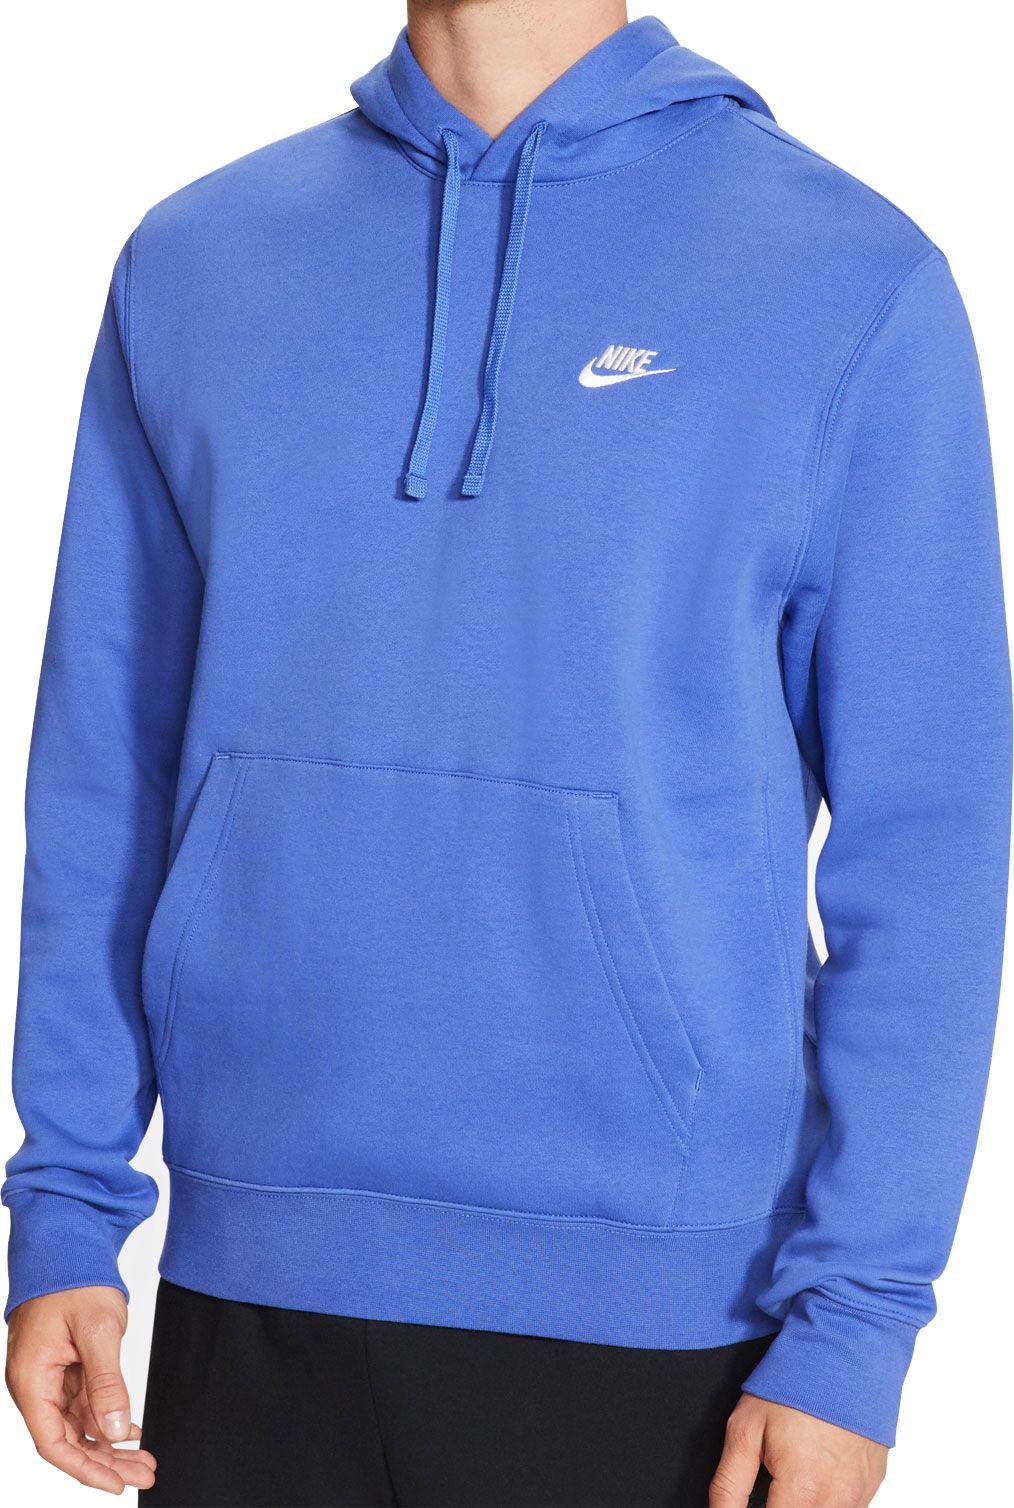 mens royal blue nike hoodie